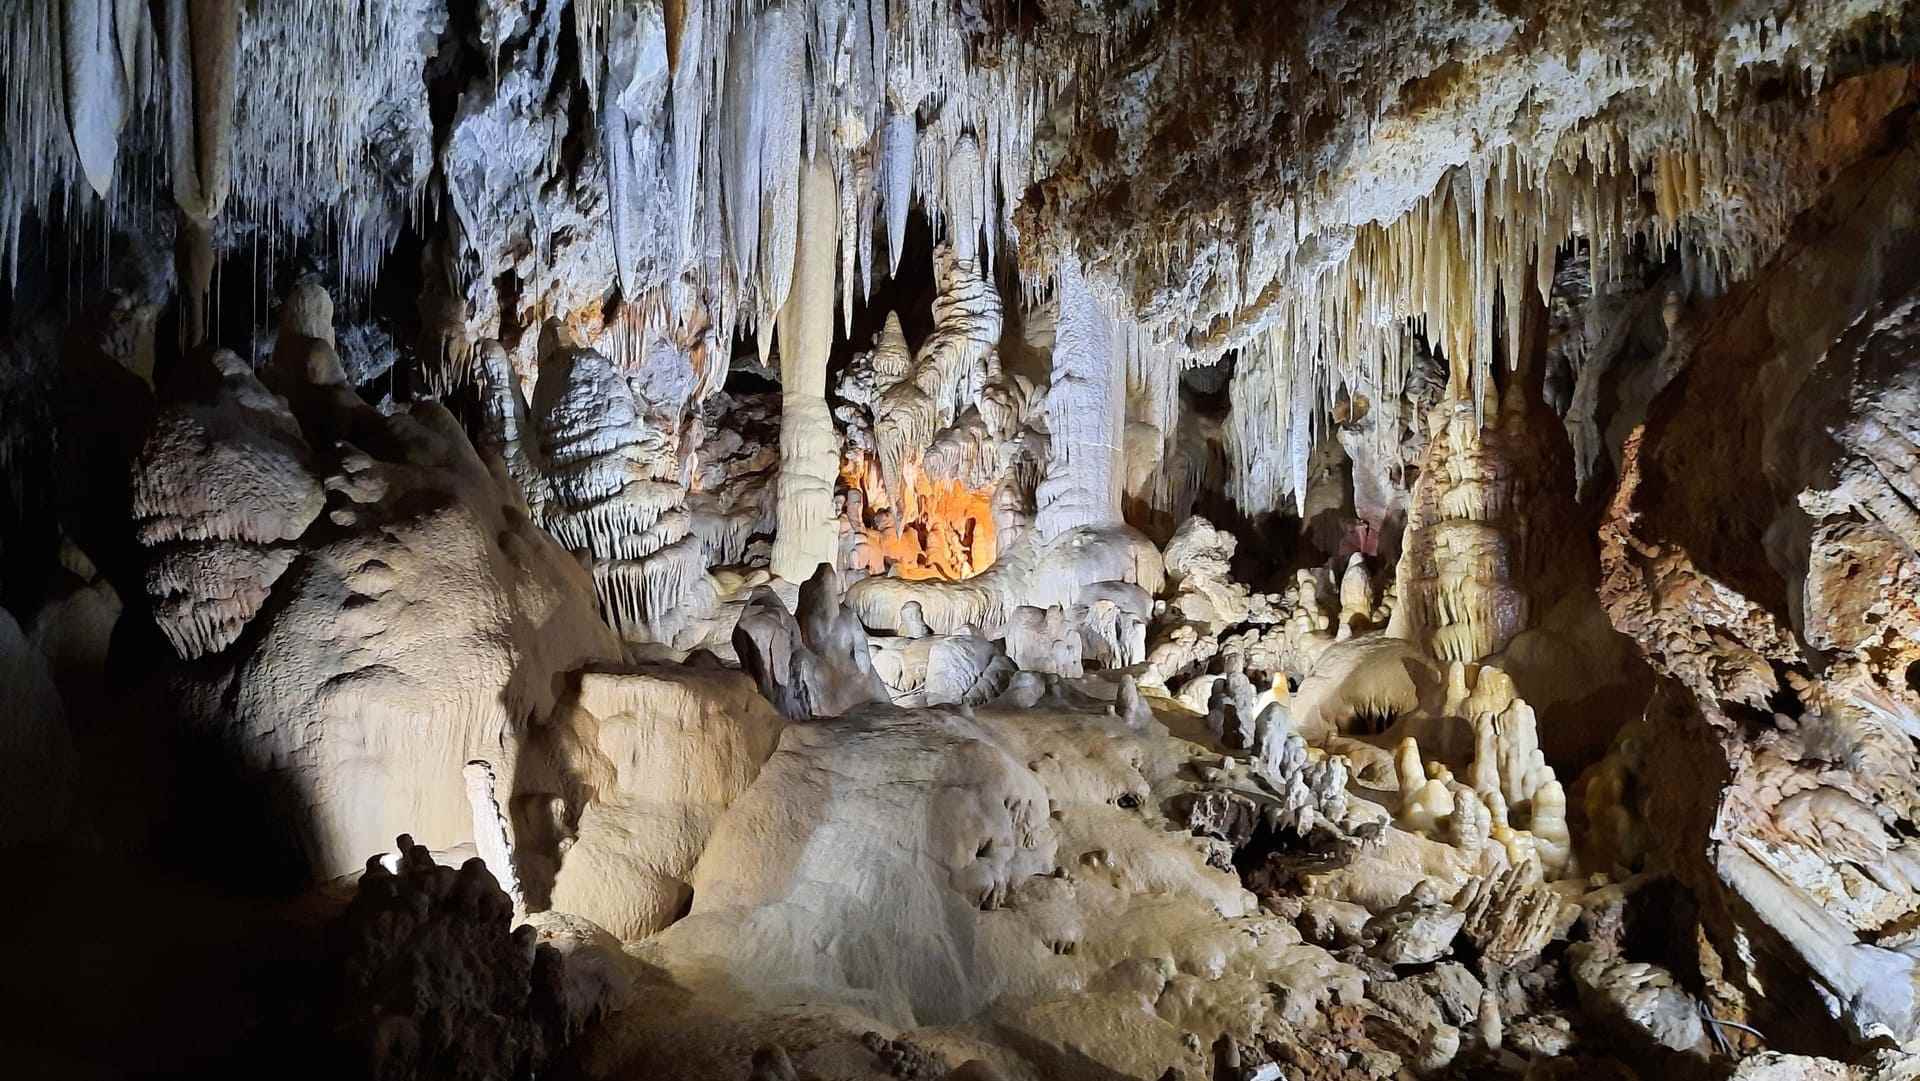 Visit to the Borgio Verezzi Caves: a fantastic underground adventure